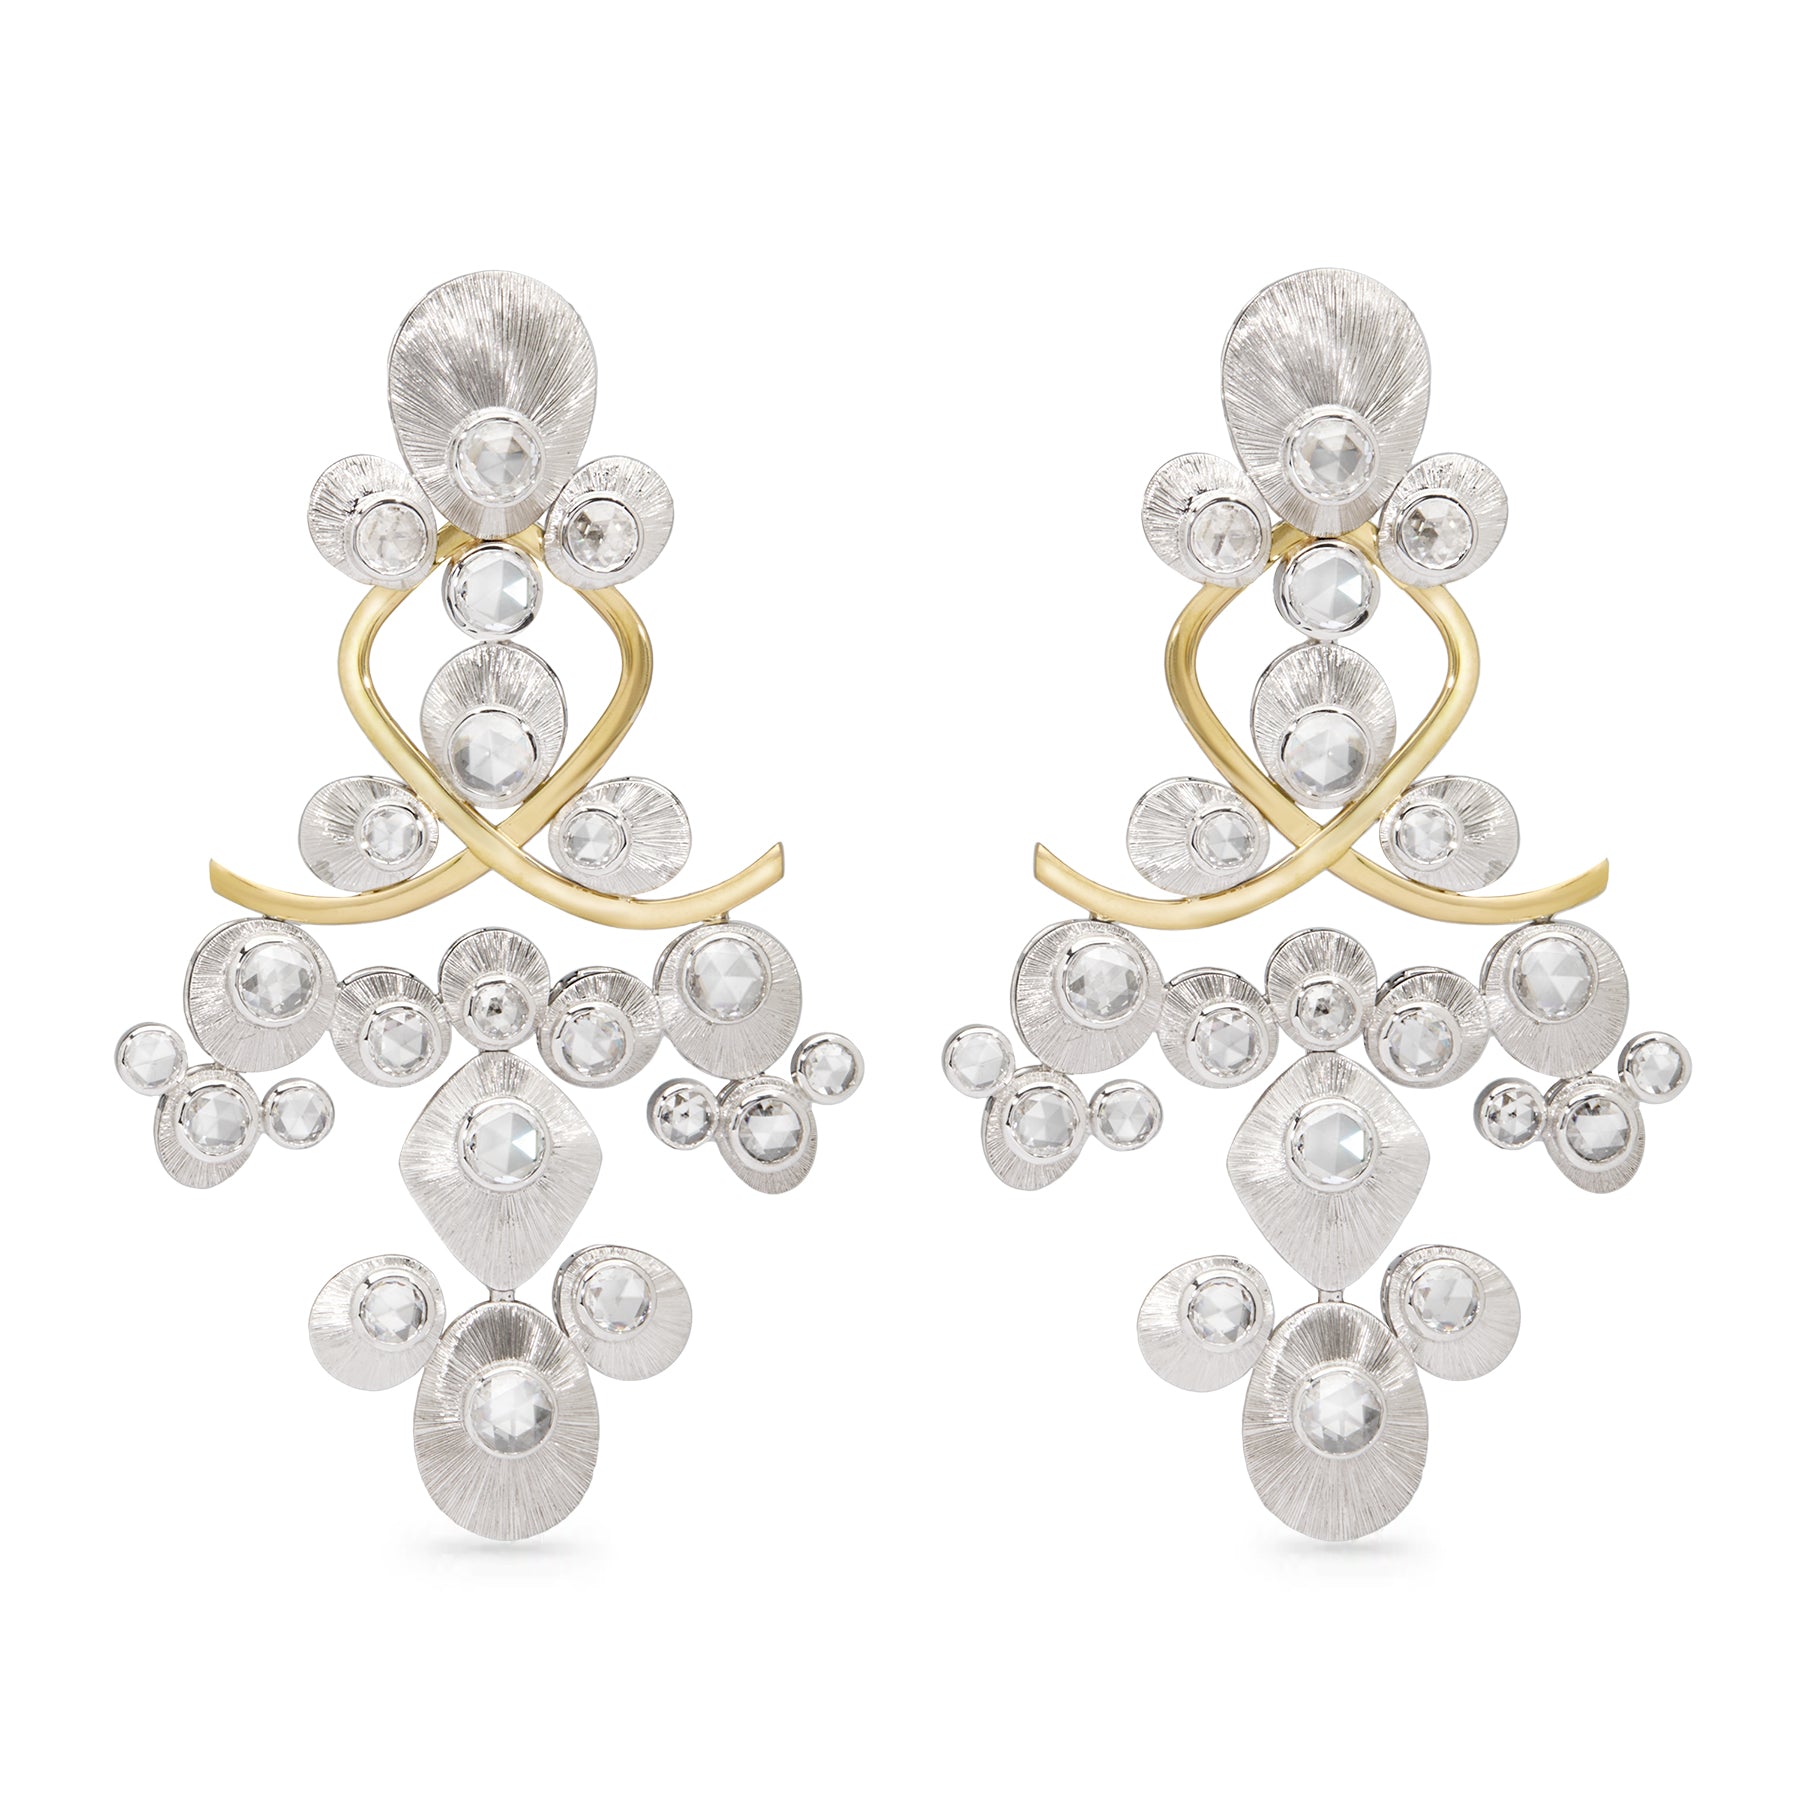 Coralie van Caloen Luxury Fine Jewellery Brussels - Chandelier Earrings, Diamonds